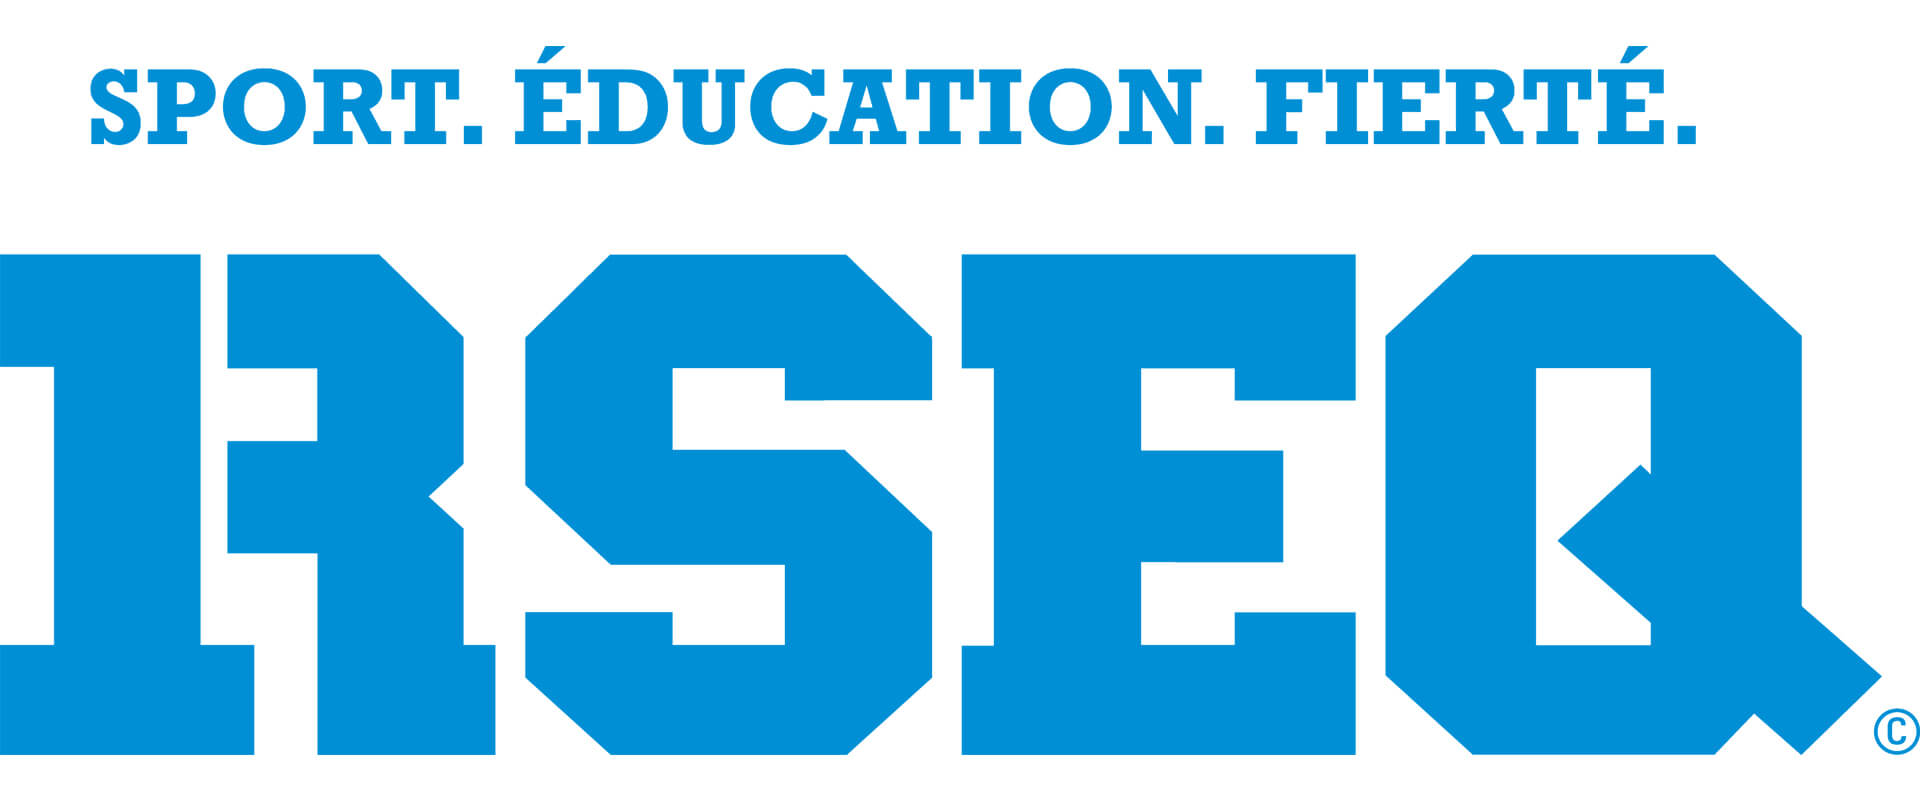 Logo RSEQ